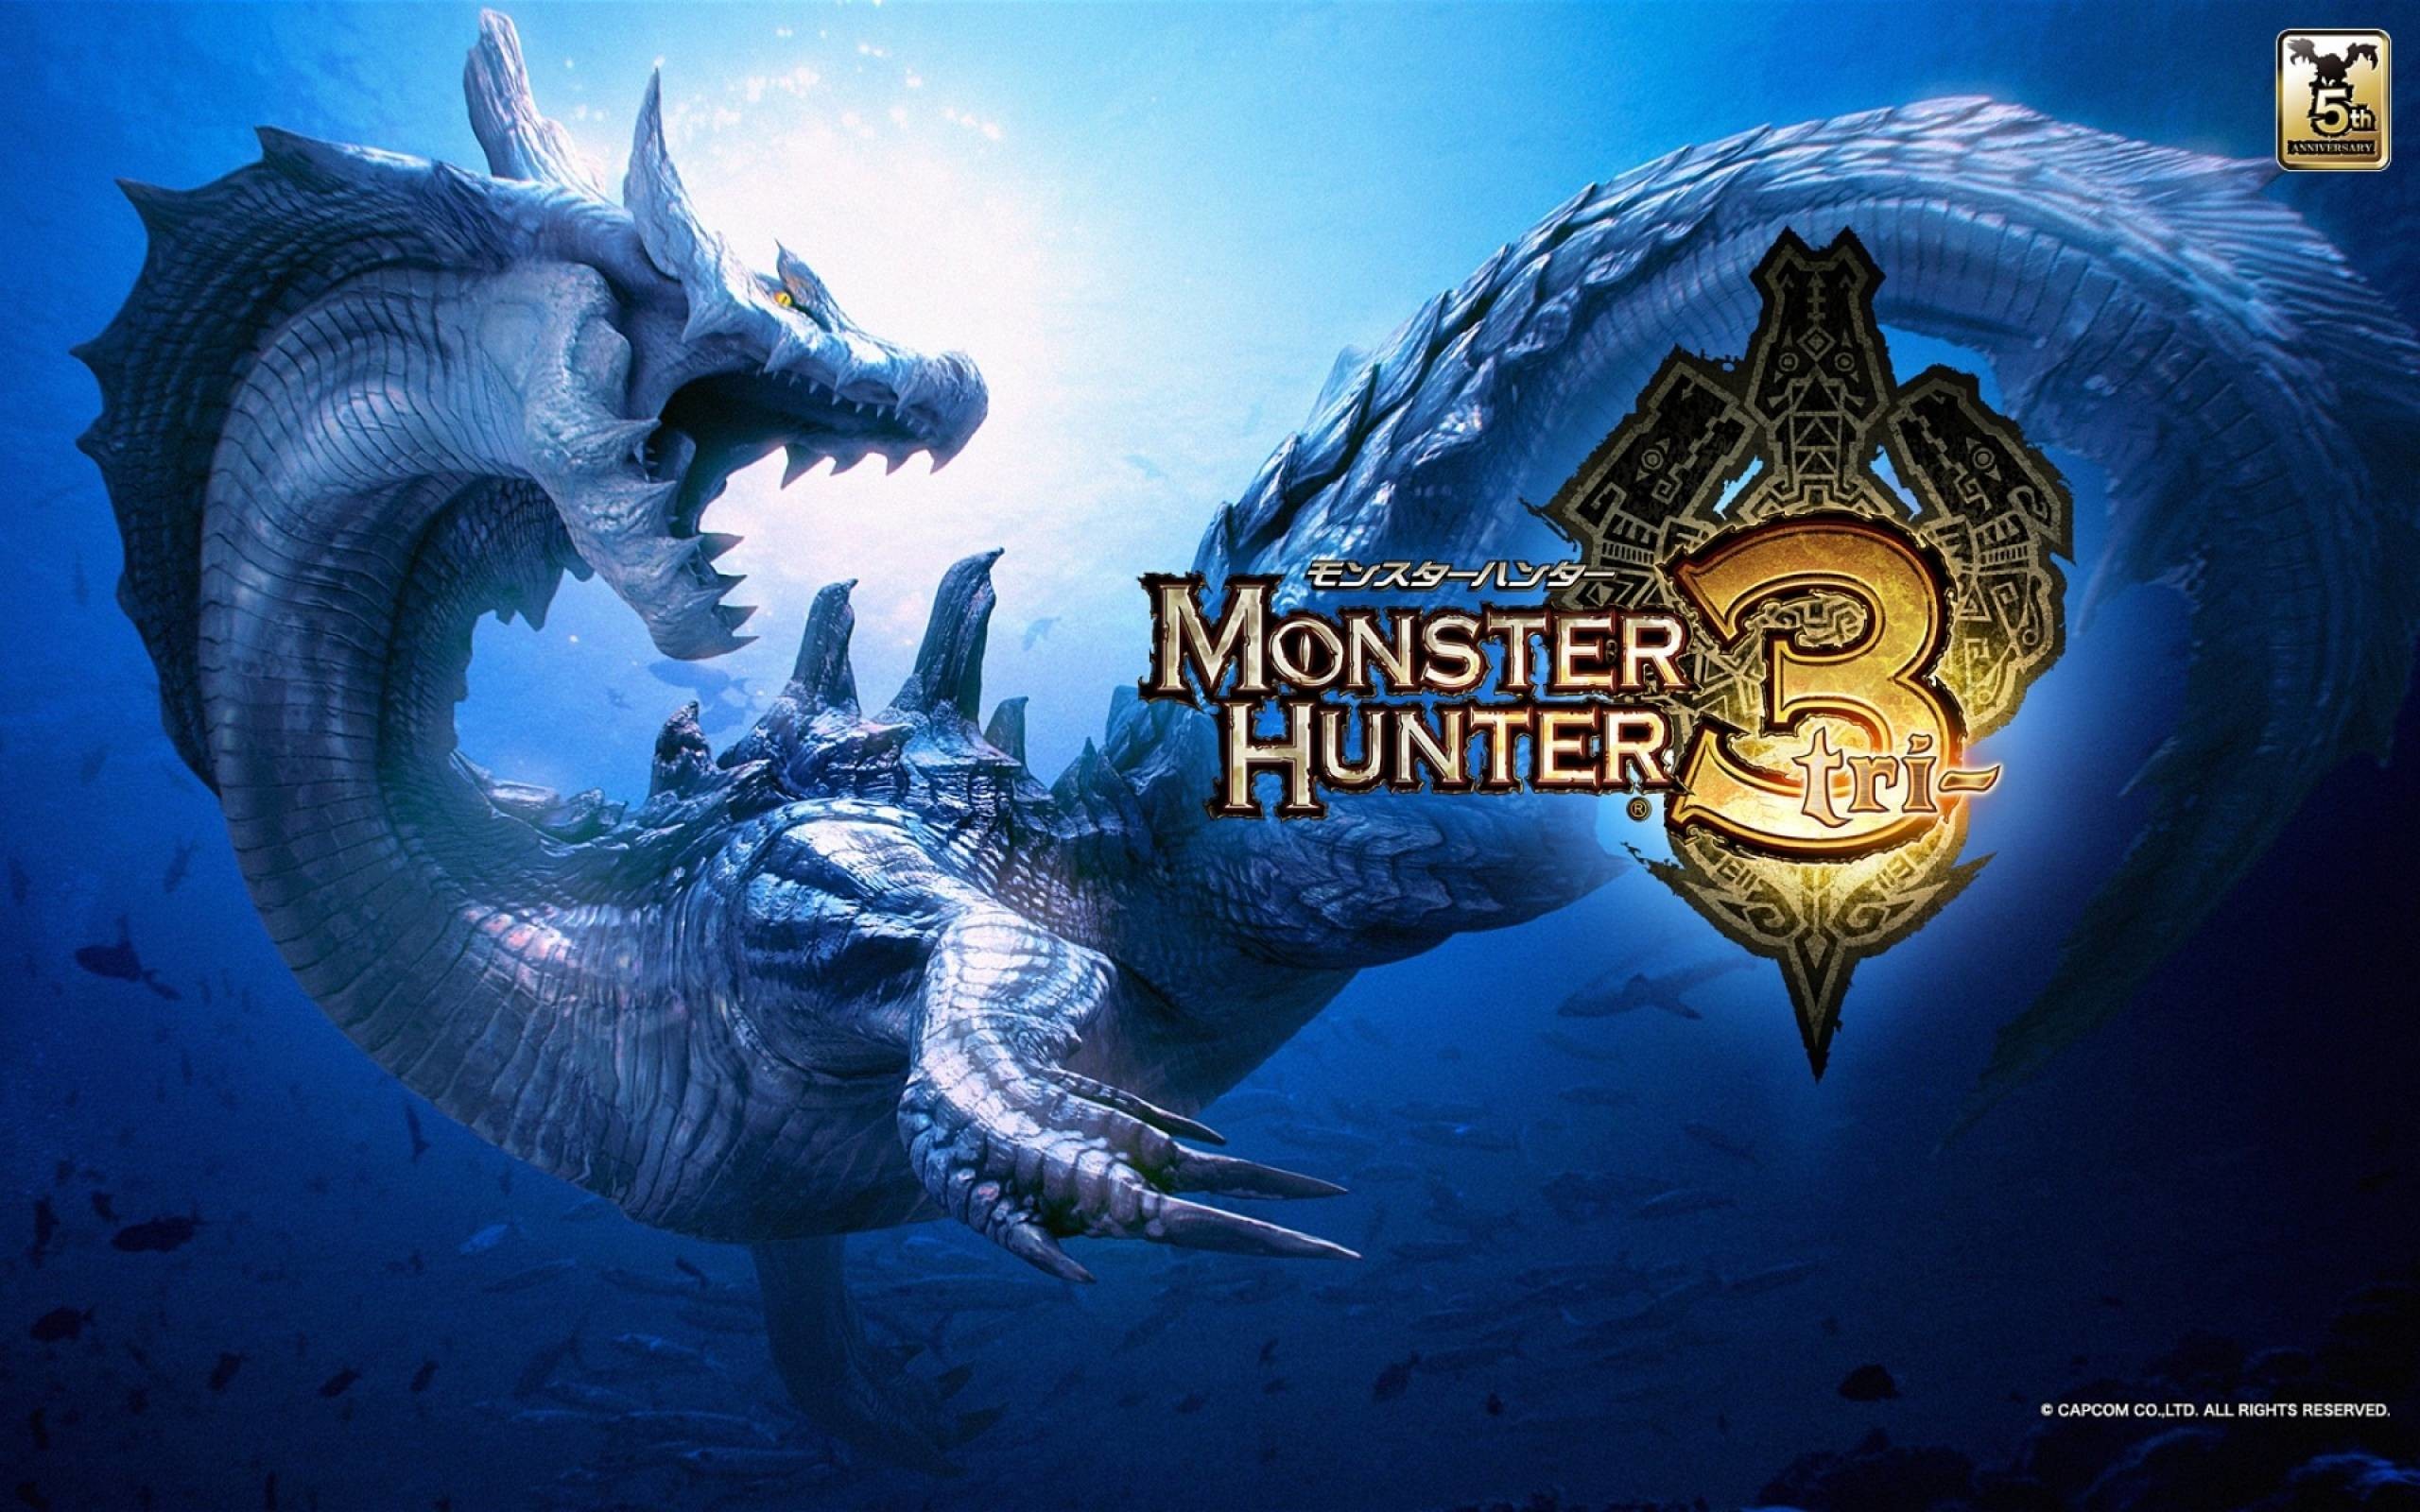 2560x1600 Monster Hunter Wallpapers Album on Imgur